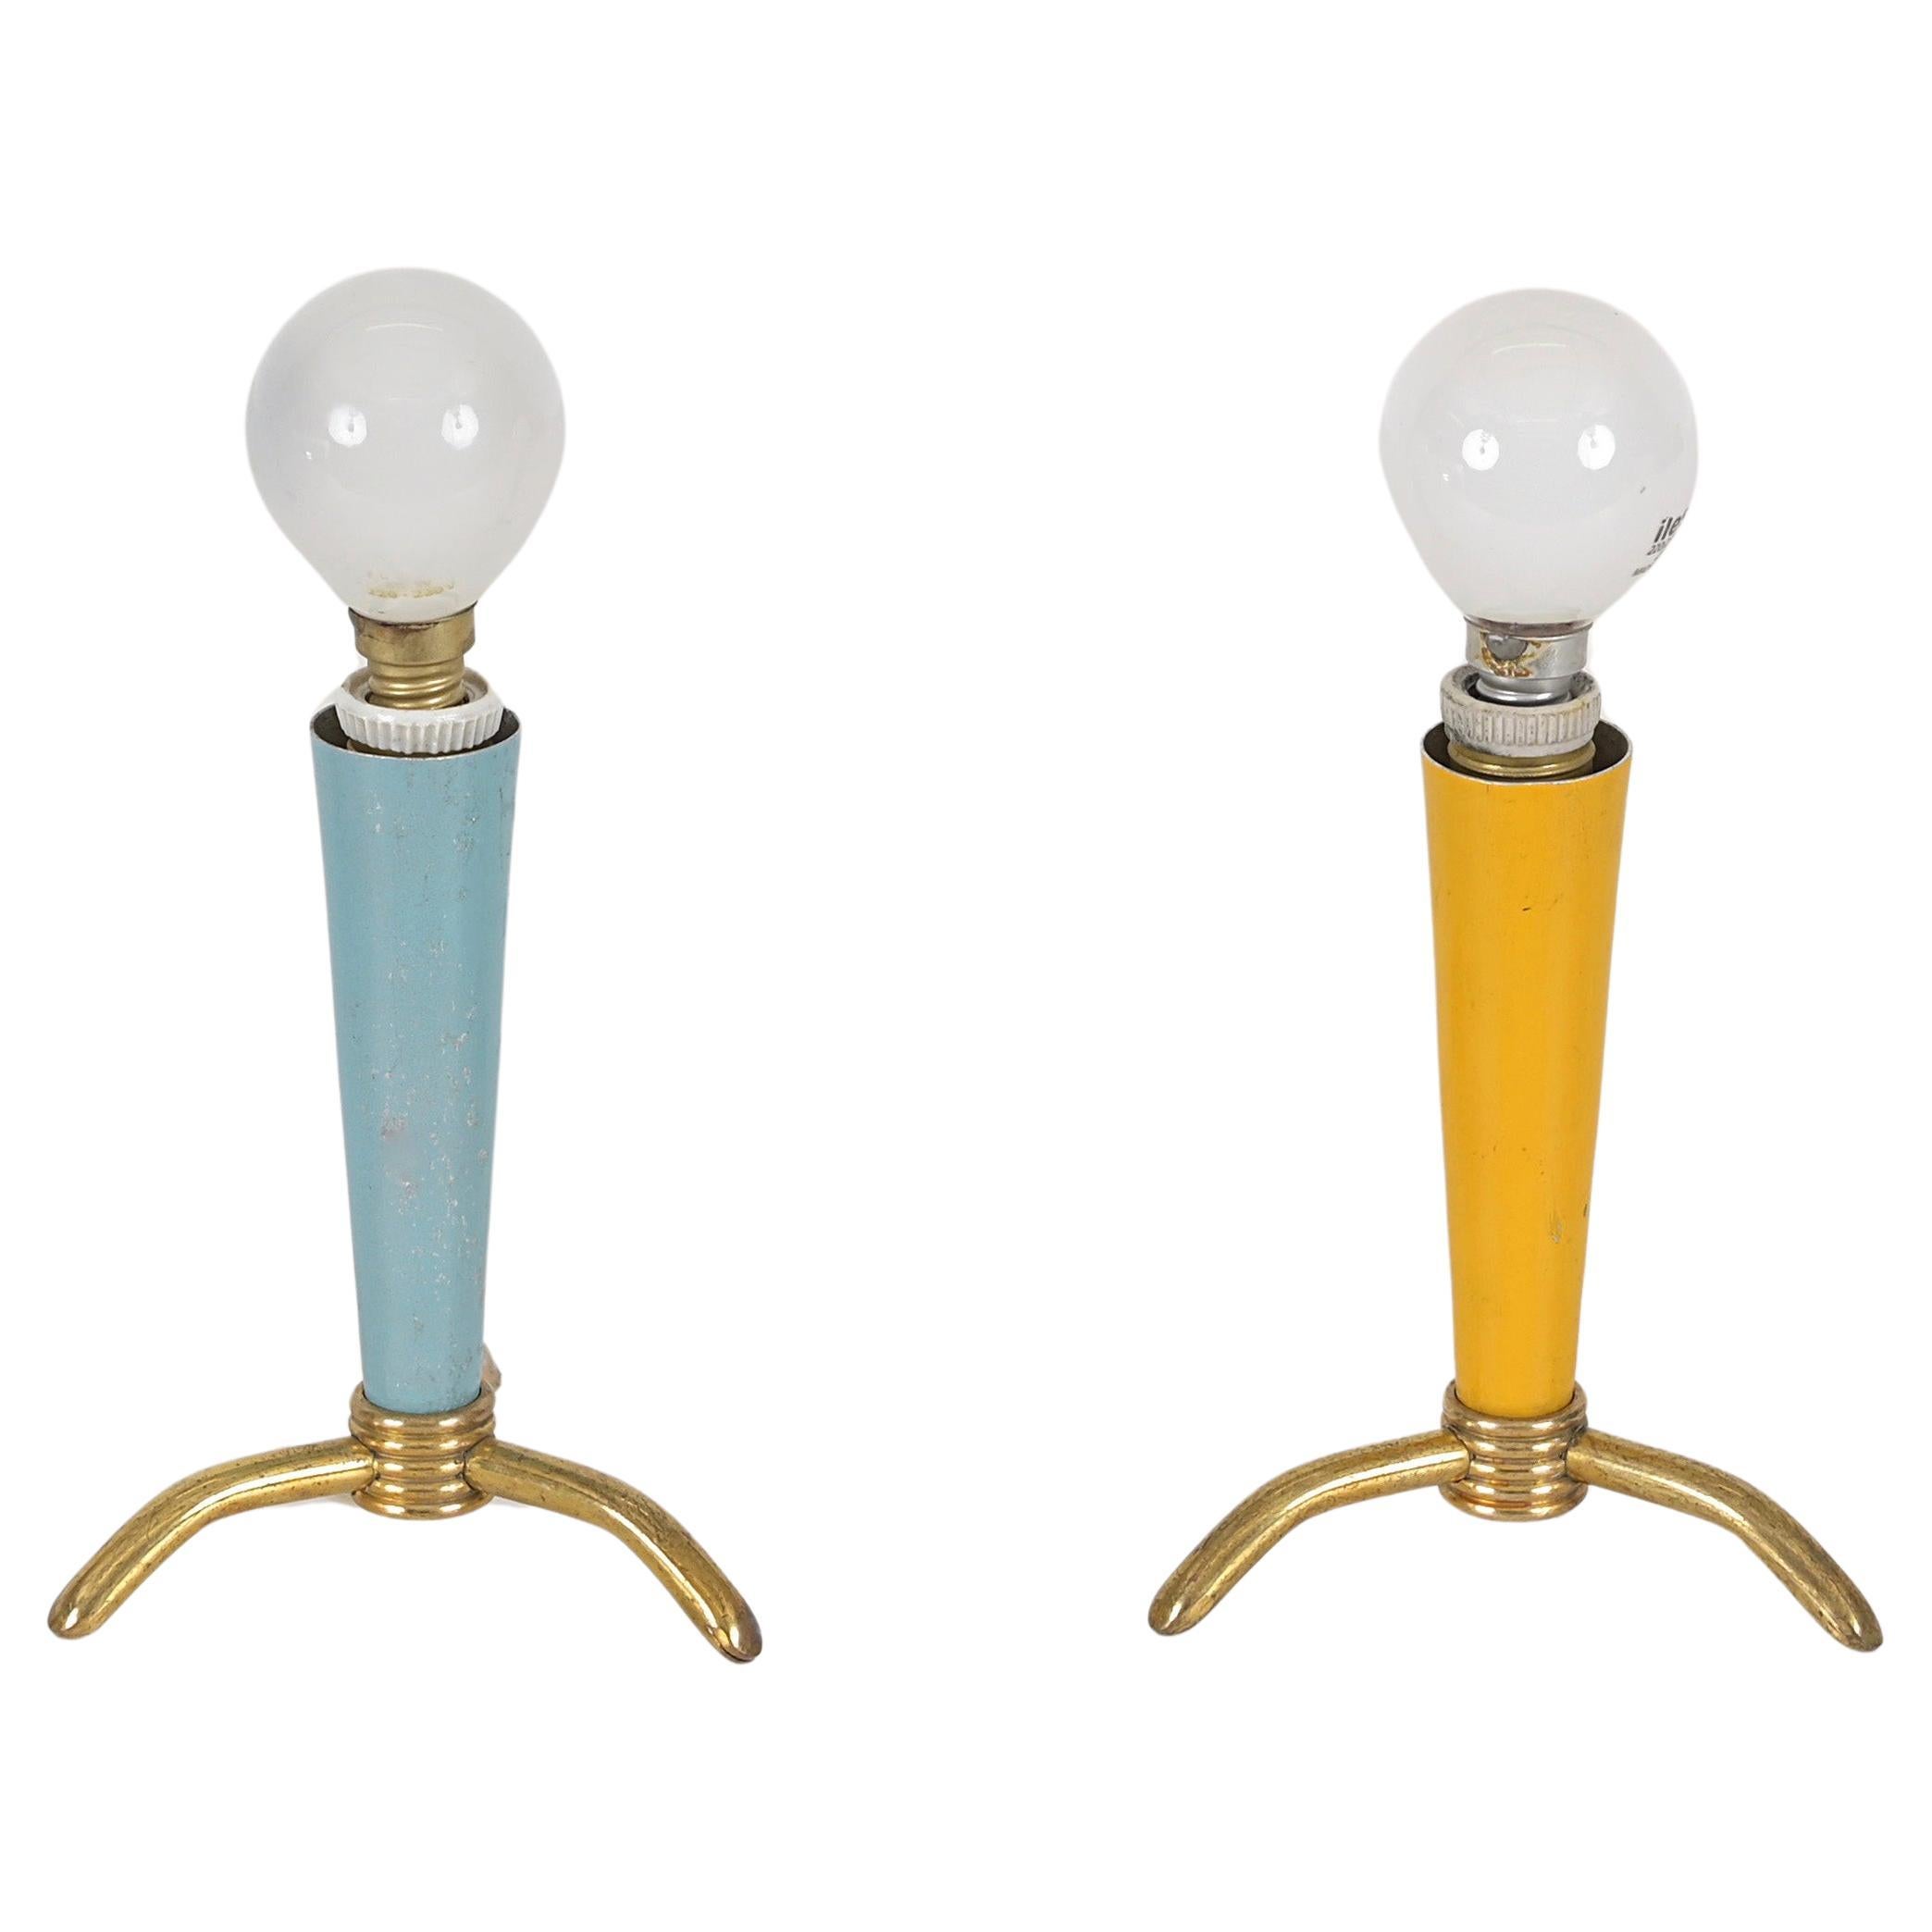 Charmante paire de lampes de table tripodes en laiton et métal émaillé. Ces jolies lampes sont attribuées à Stilnovo et ont été fabriquées en Italie dans les années 1950.

Les petites lampes présentent un charmant abat-jour conique en métal émaillé